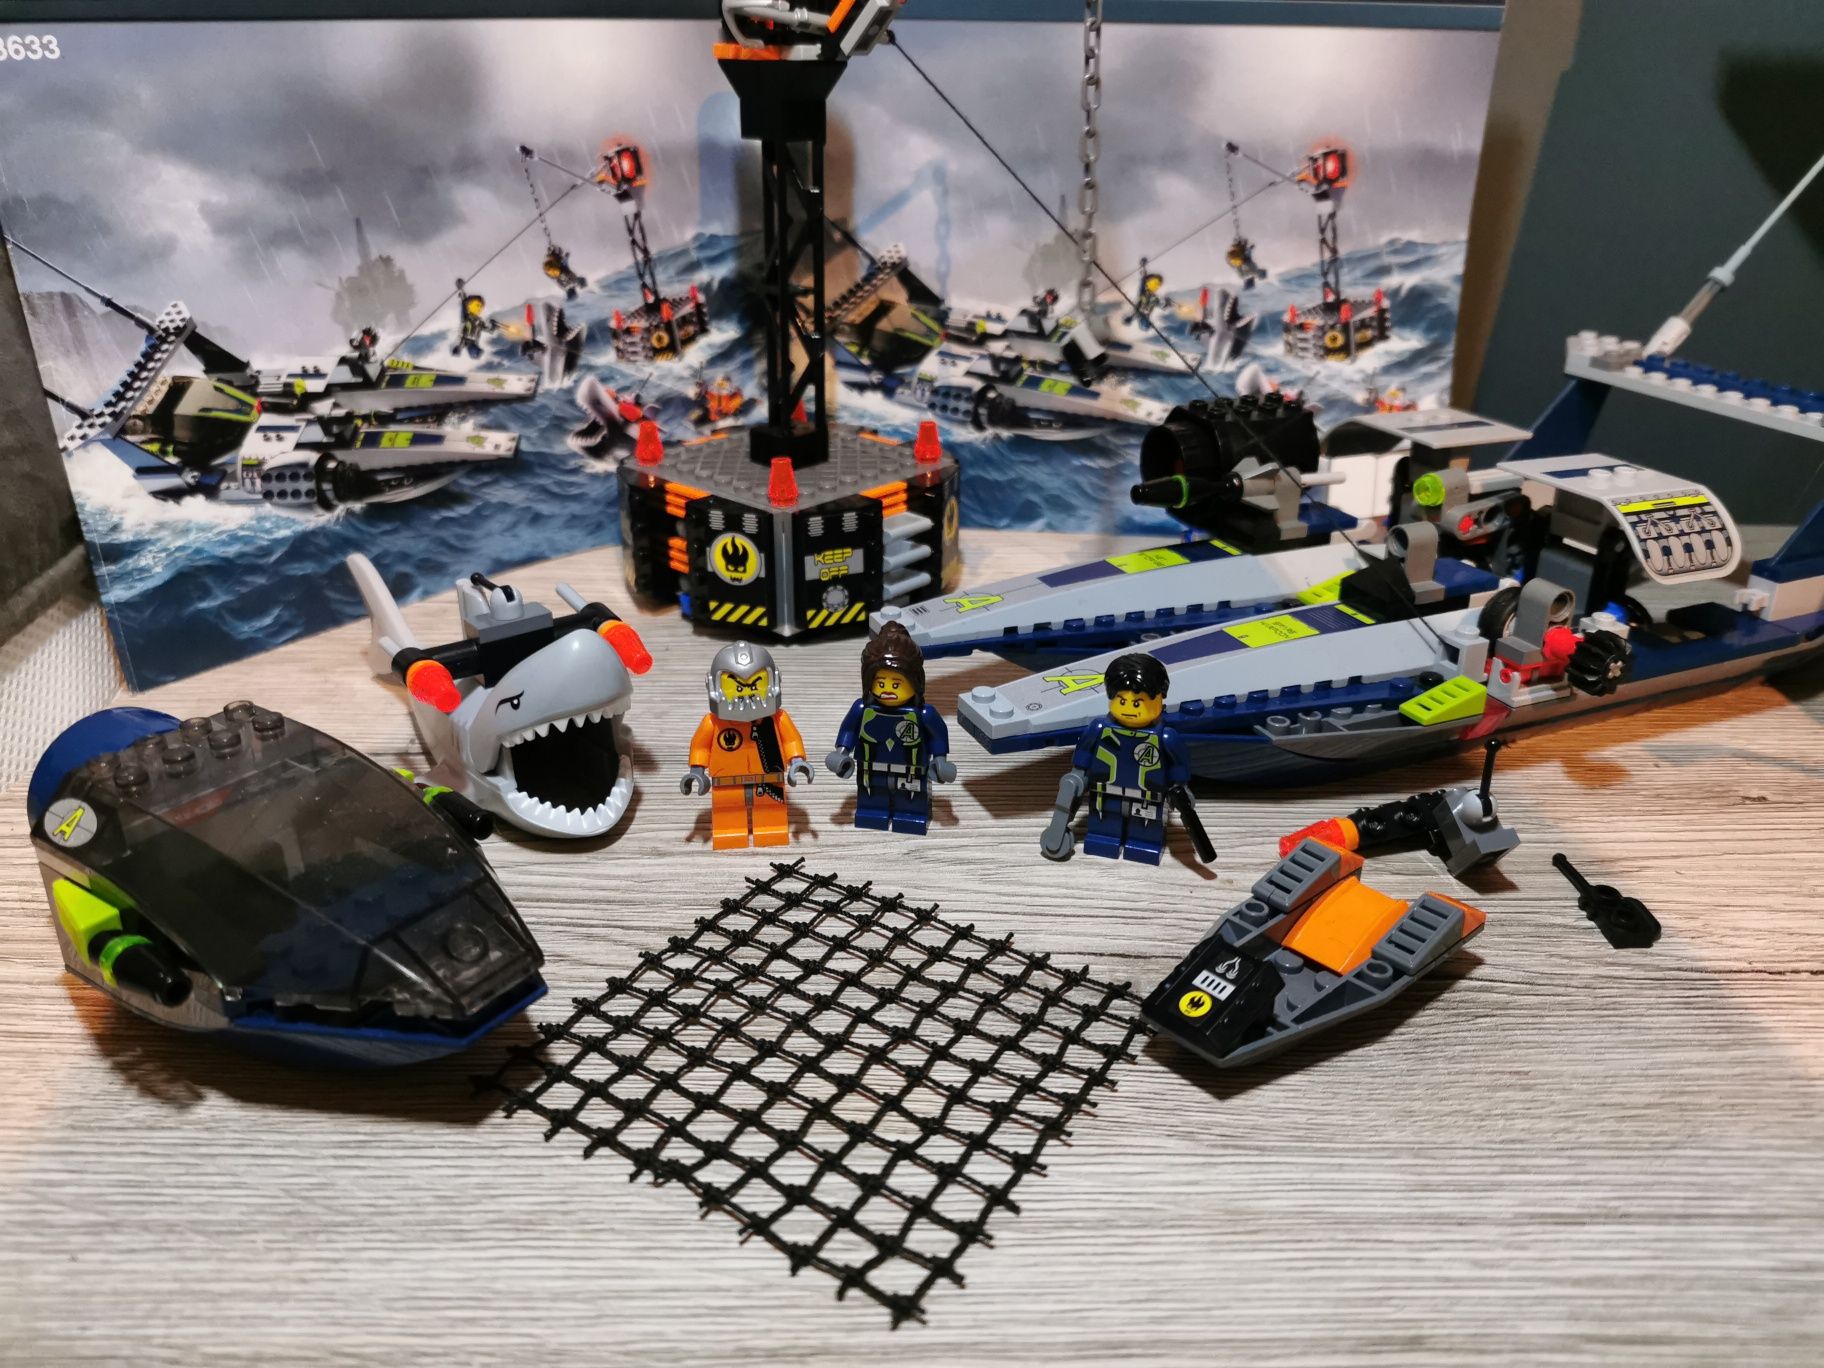 Lego Agents 8633 Misja 4 Agenci ratunkowi łodzi unikat